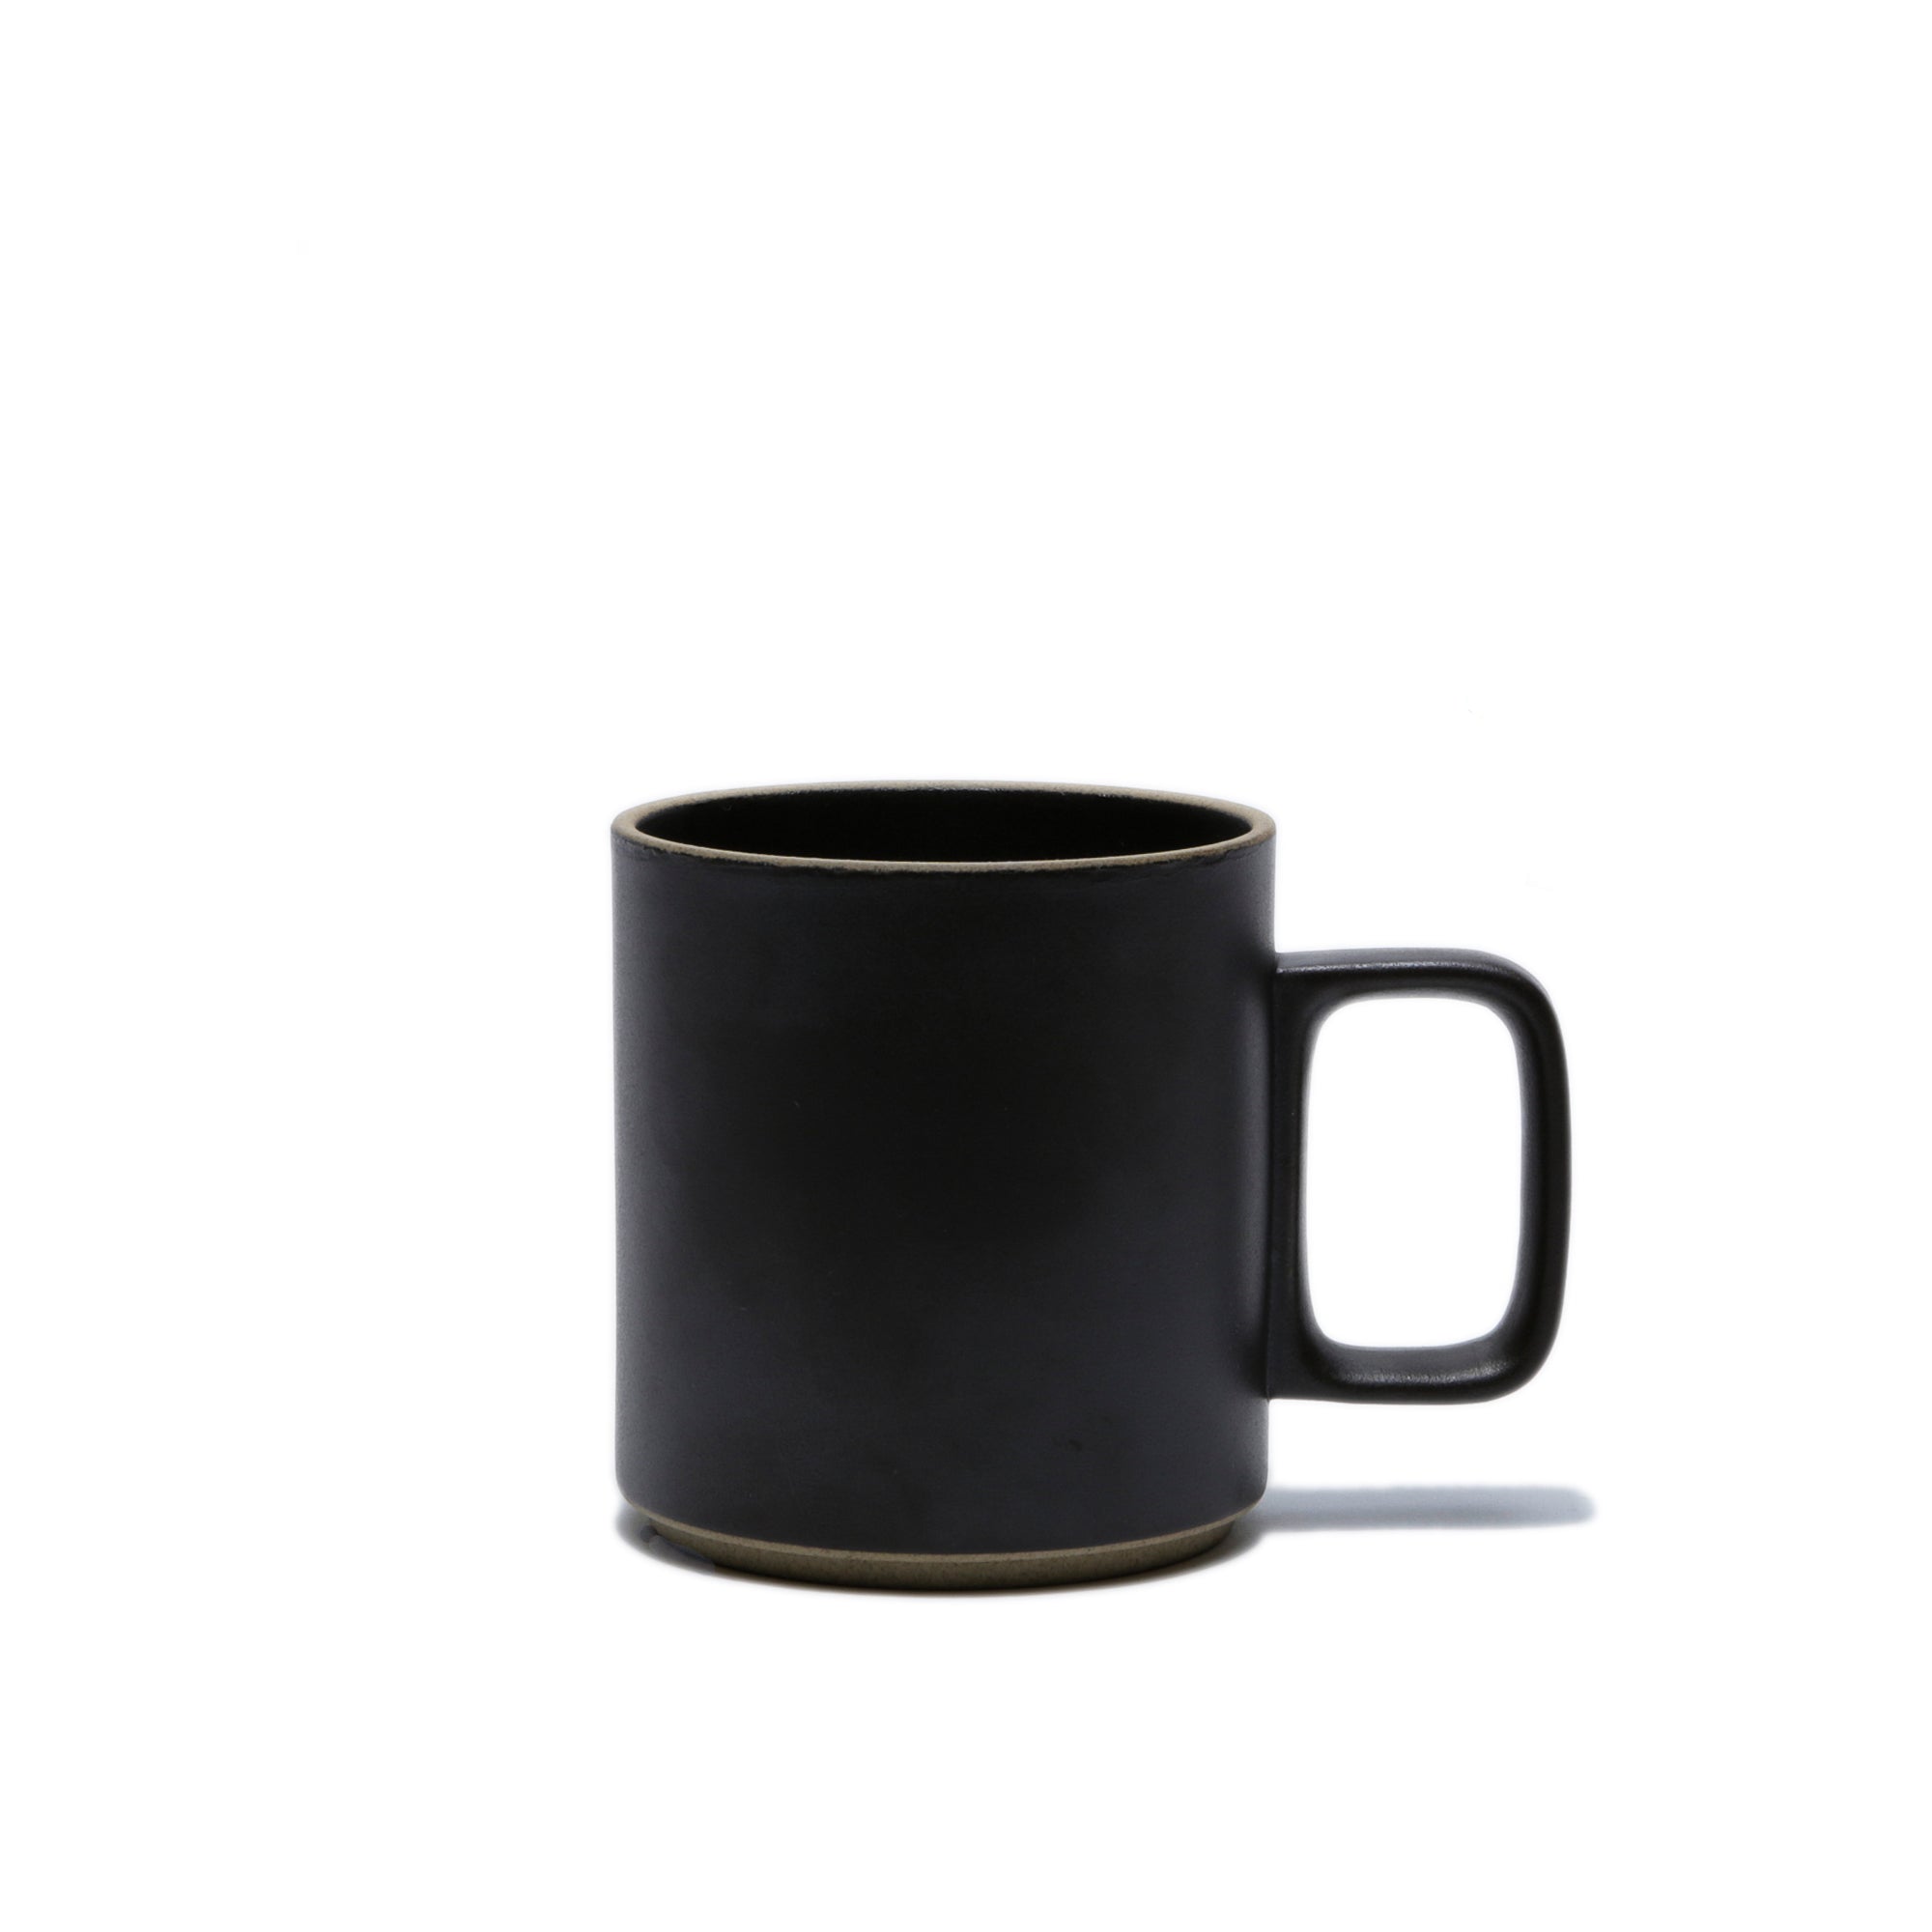 Matte Black Porcelain Ceramic Mug